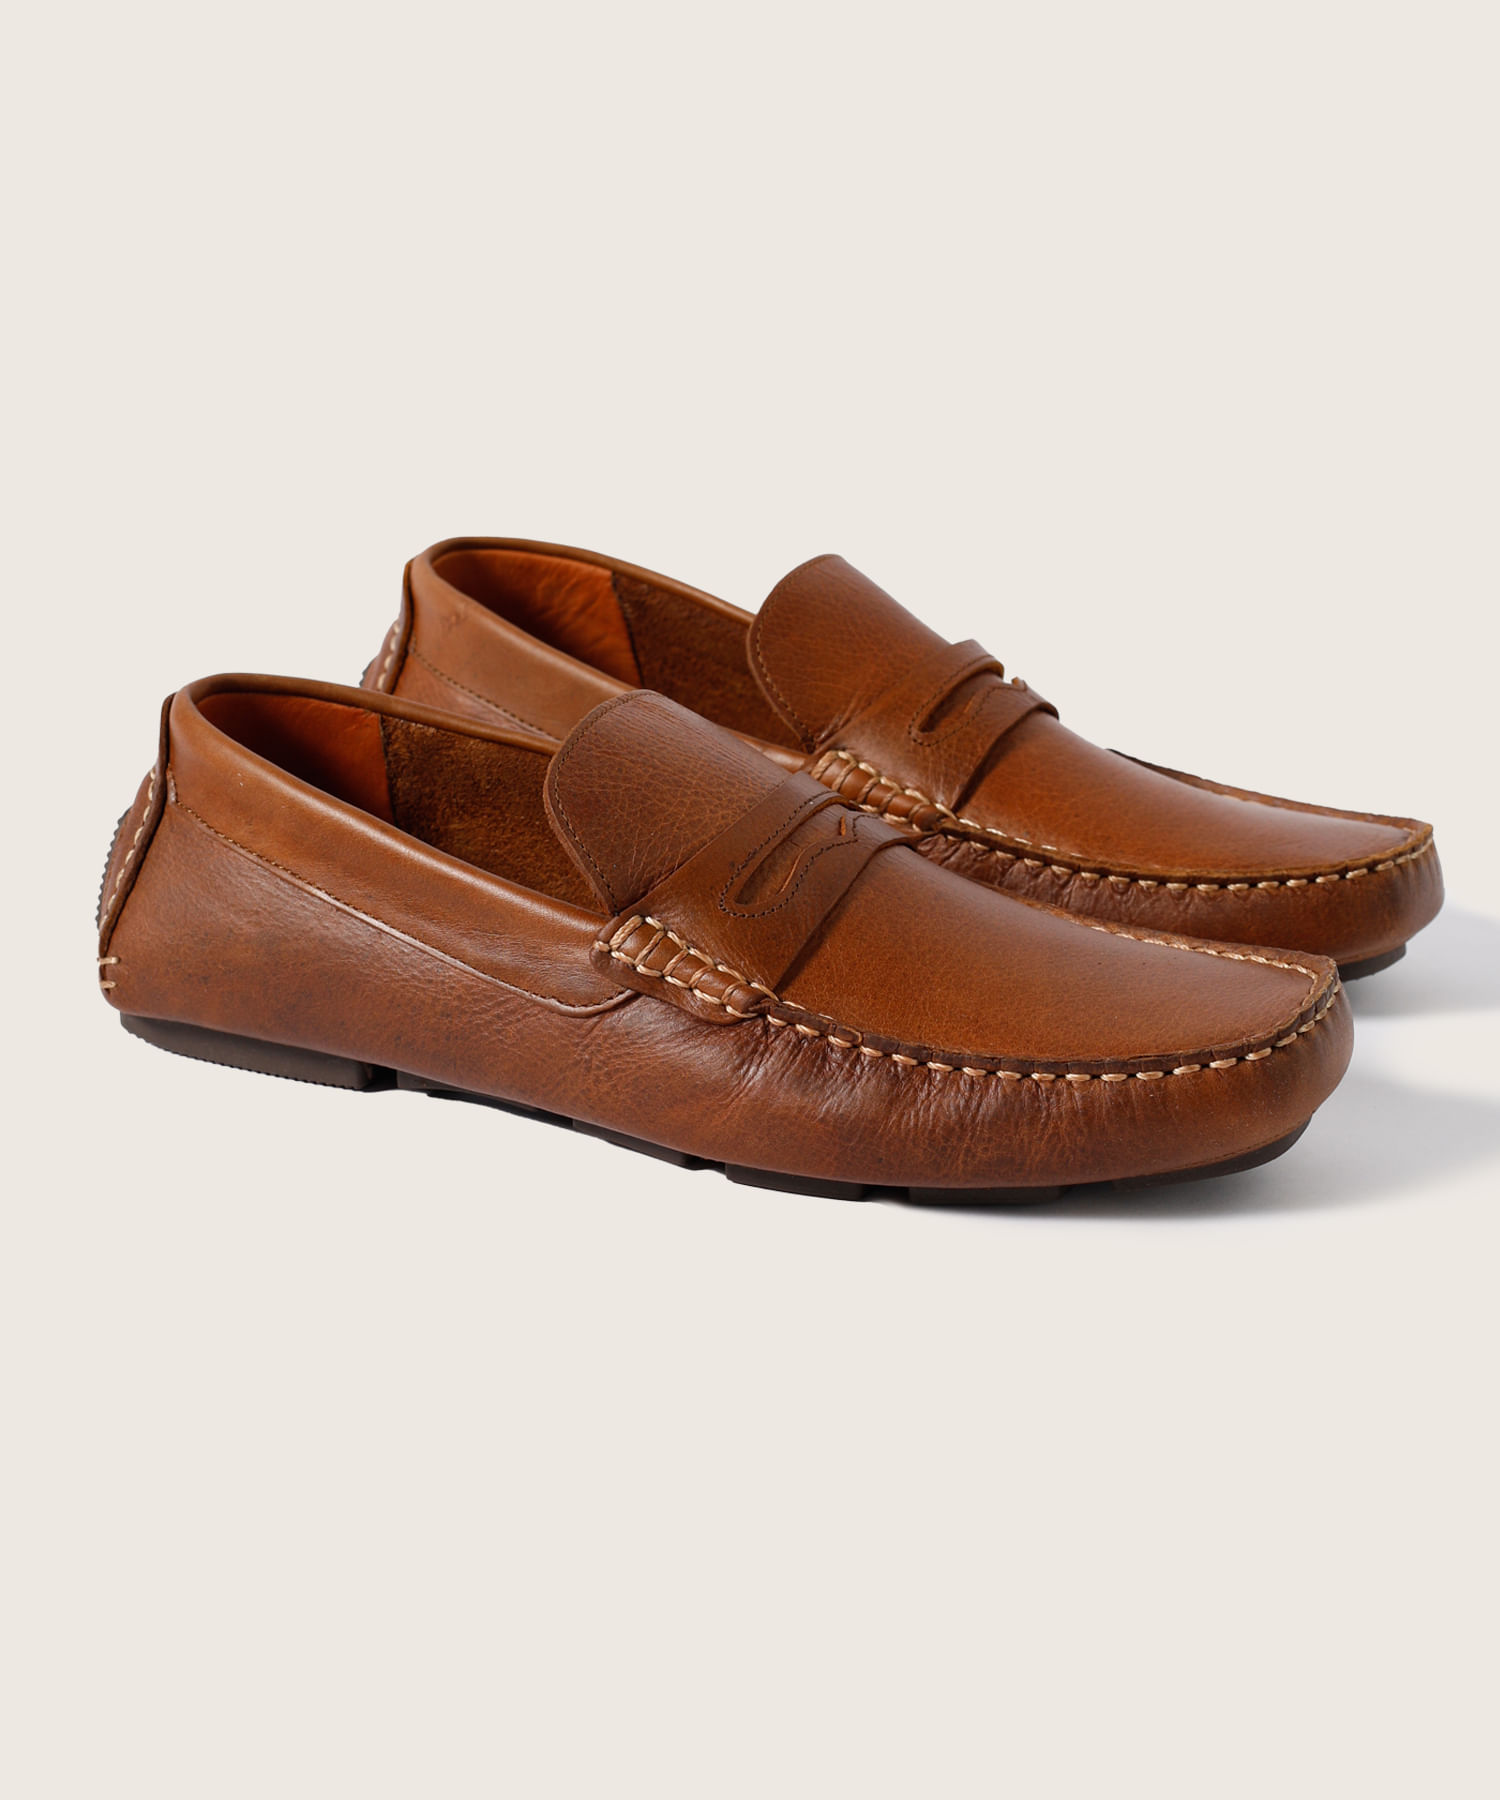 Calzado Hombres - Zapatos de cuero